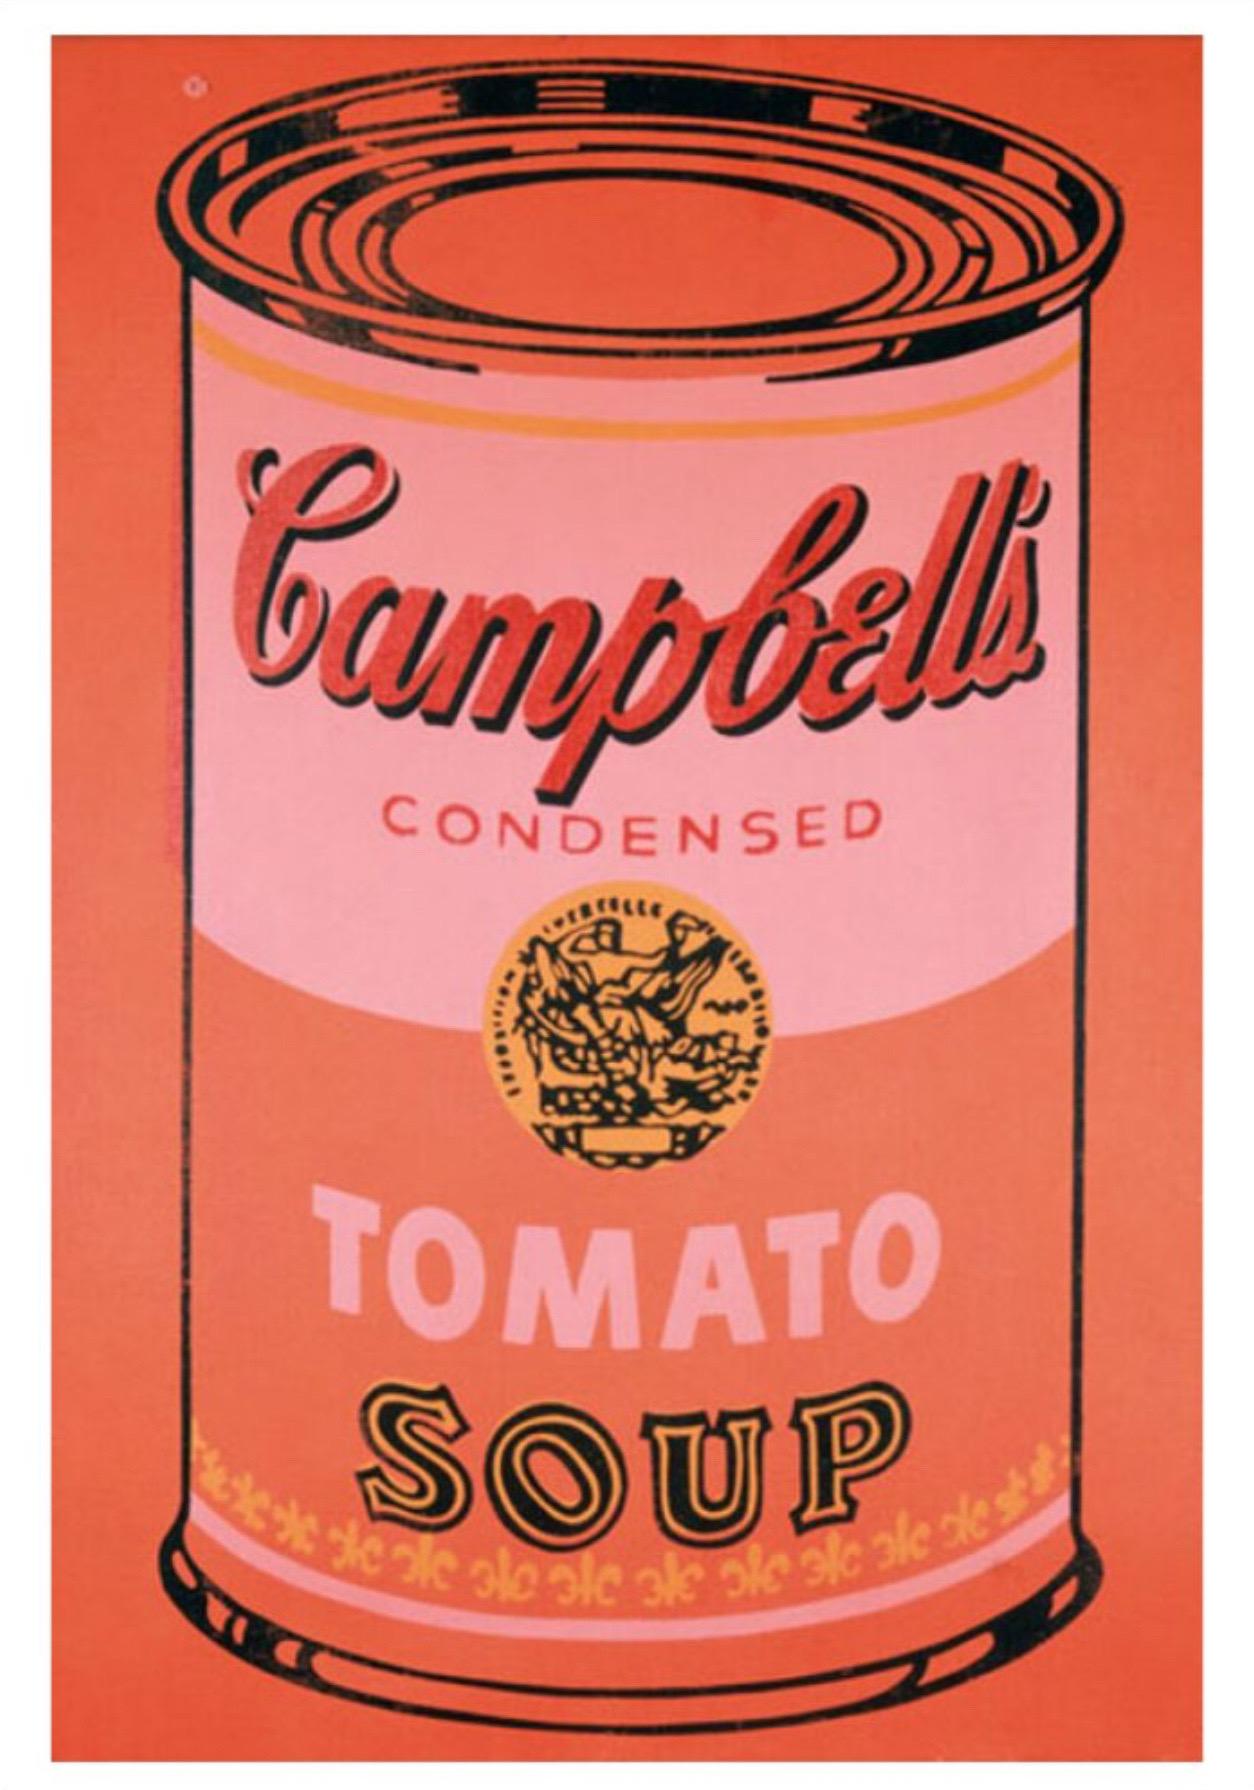 boite de soupe campbell andy warhol histoire des arts